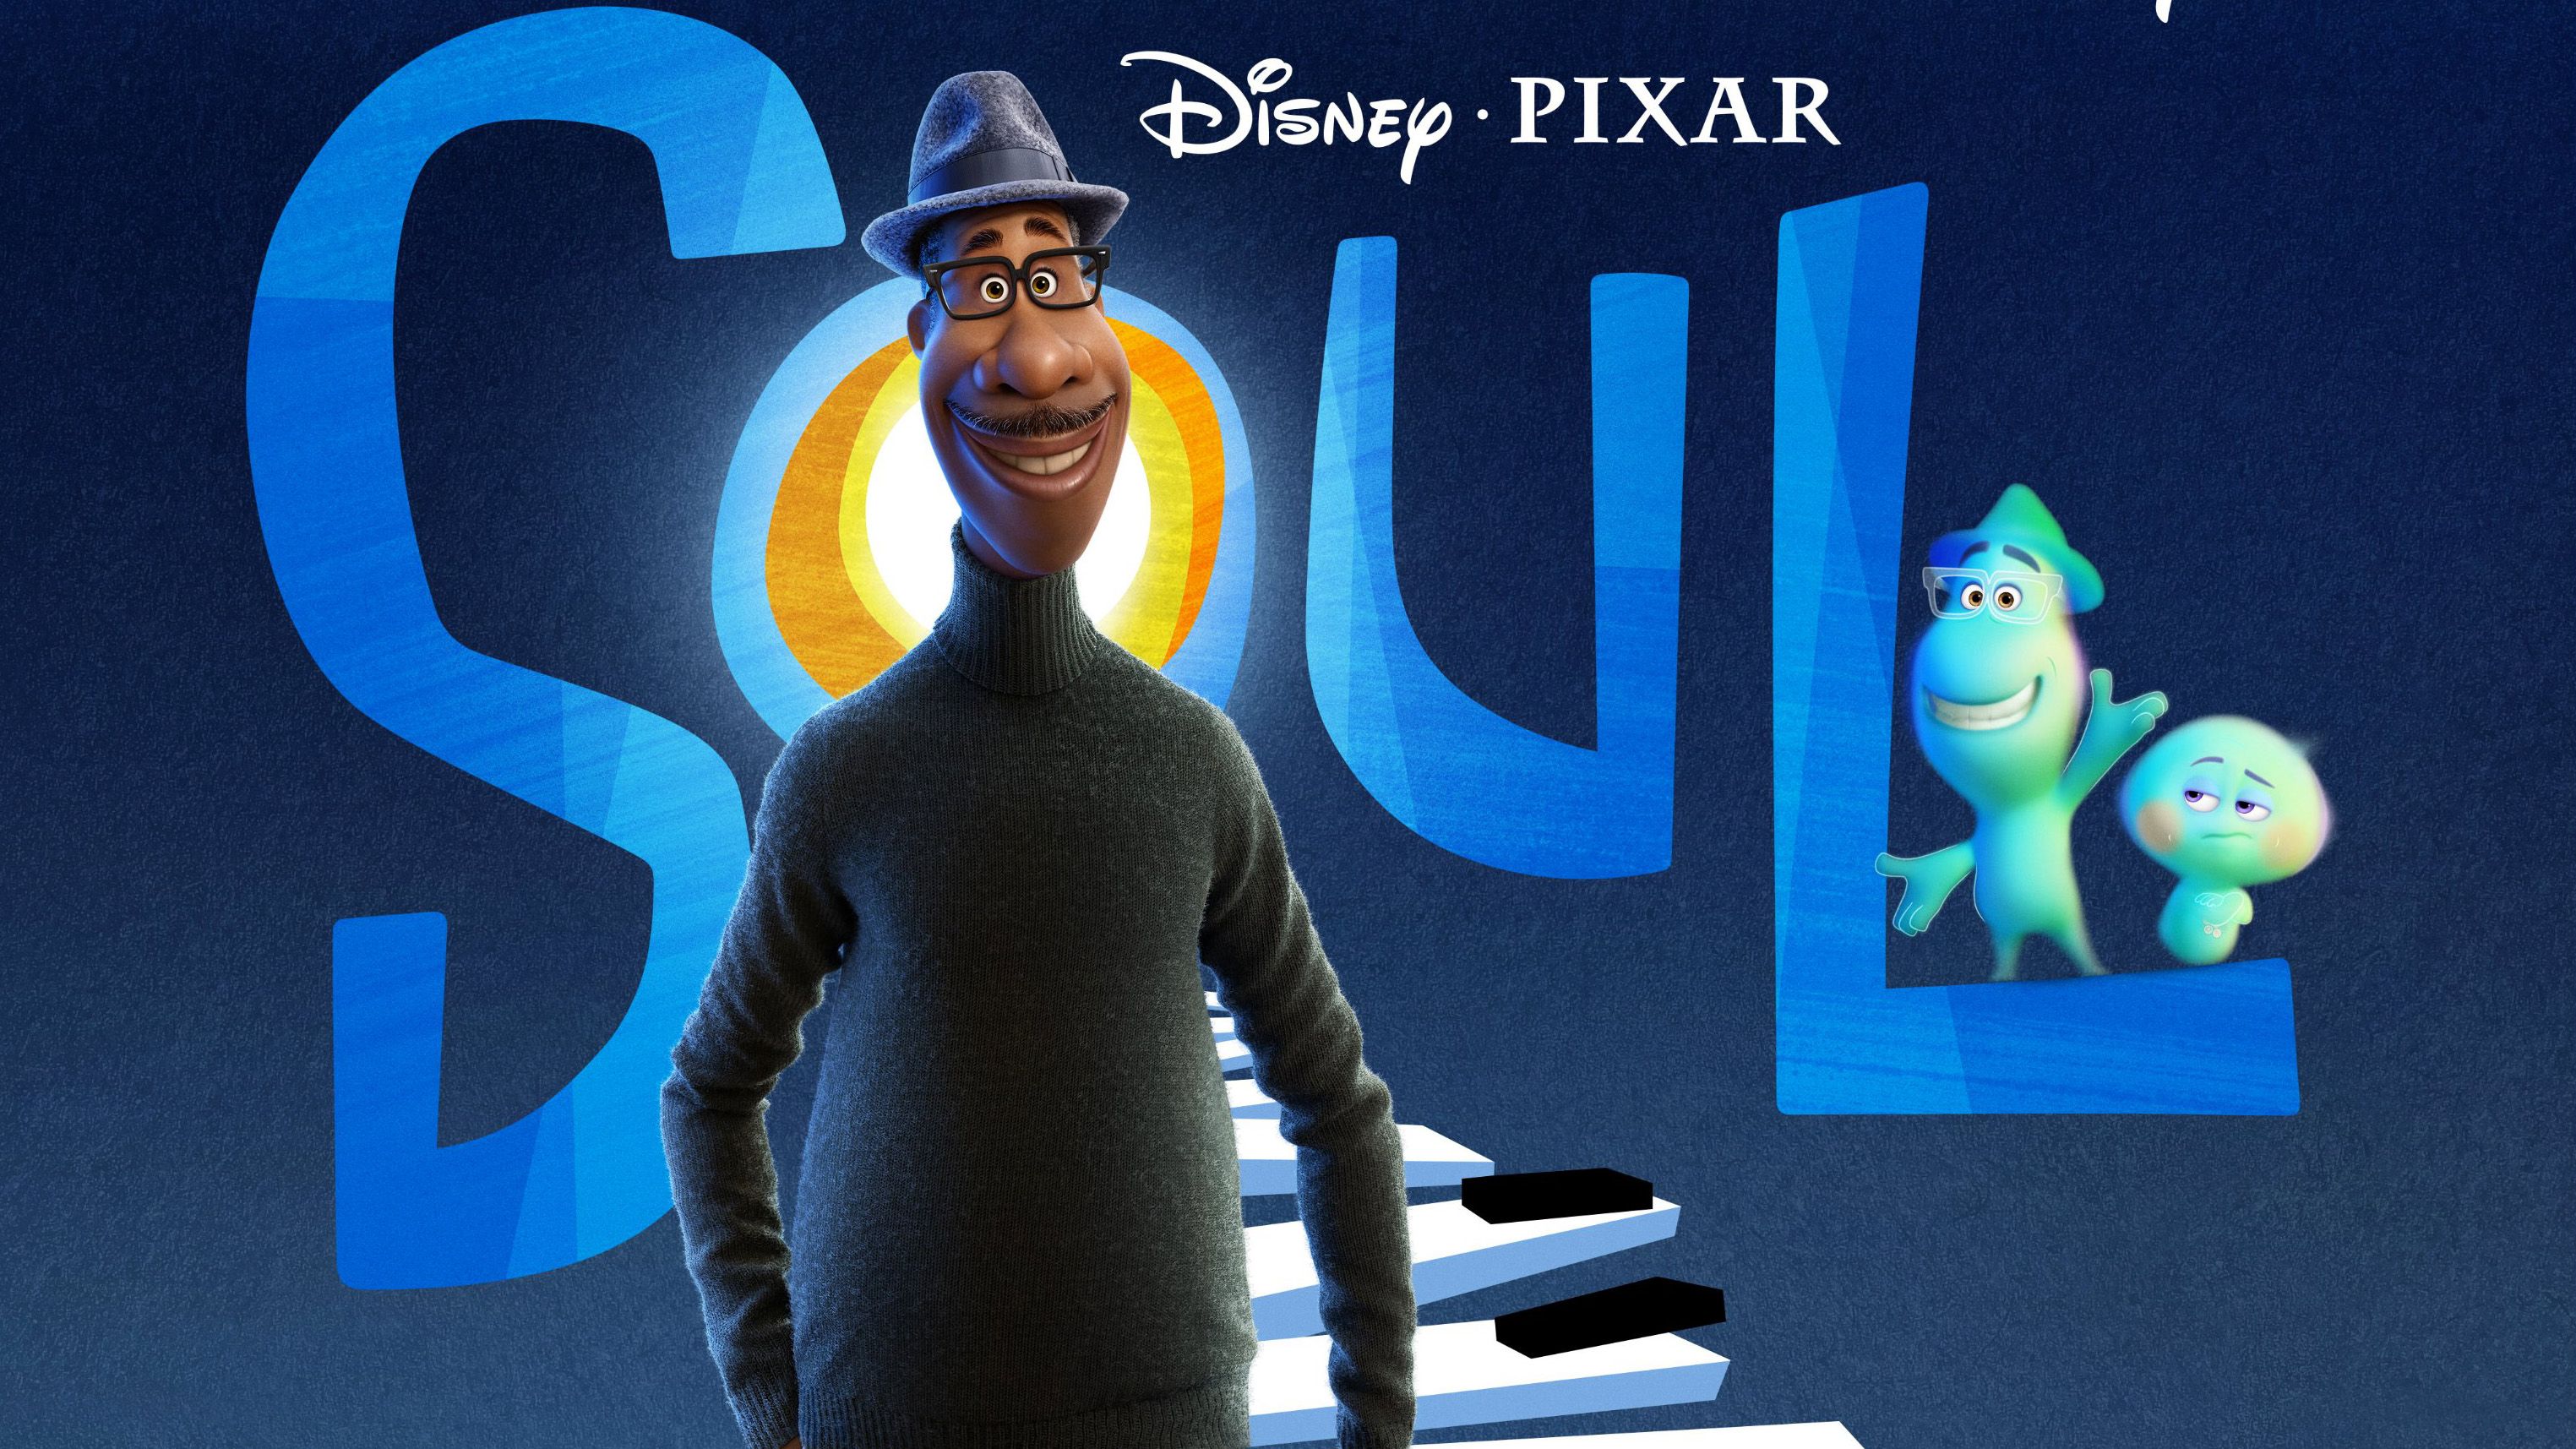 Disney Plus will soon get Pixar's Soul